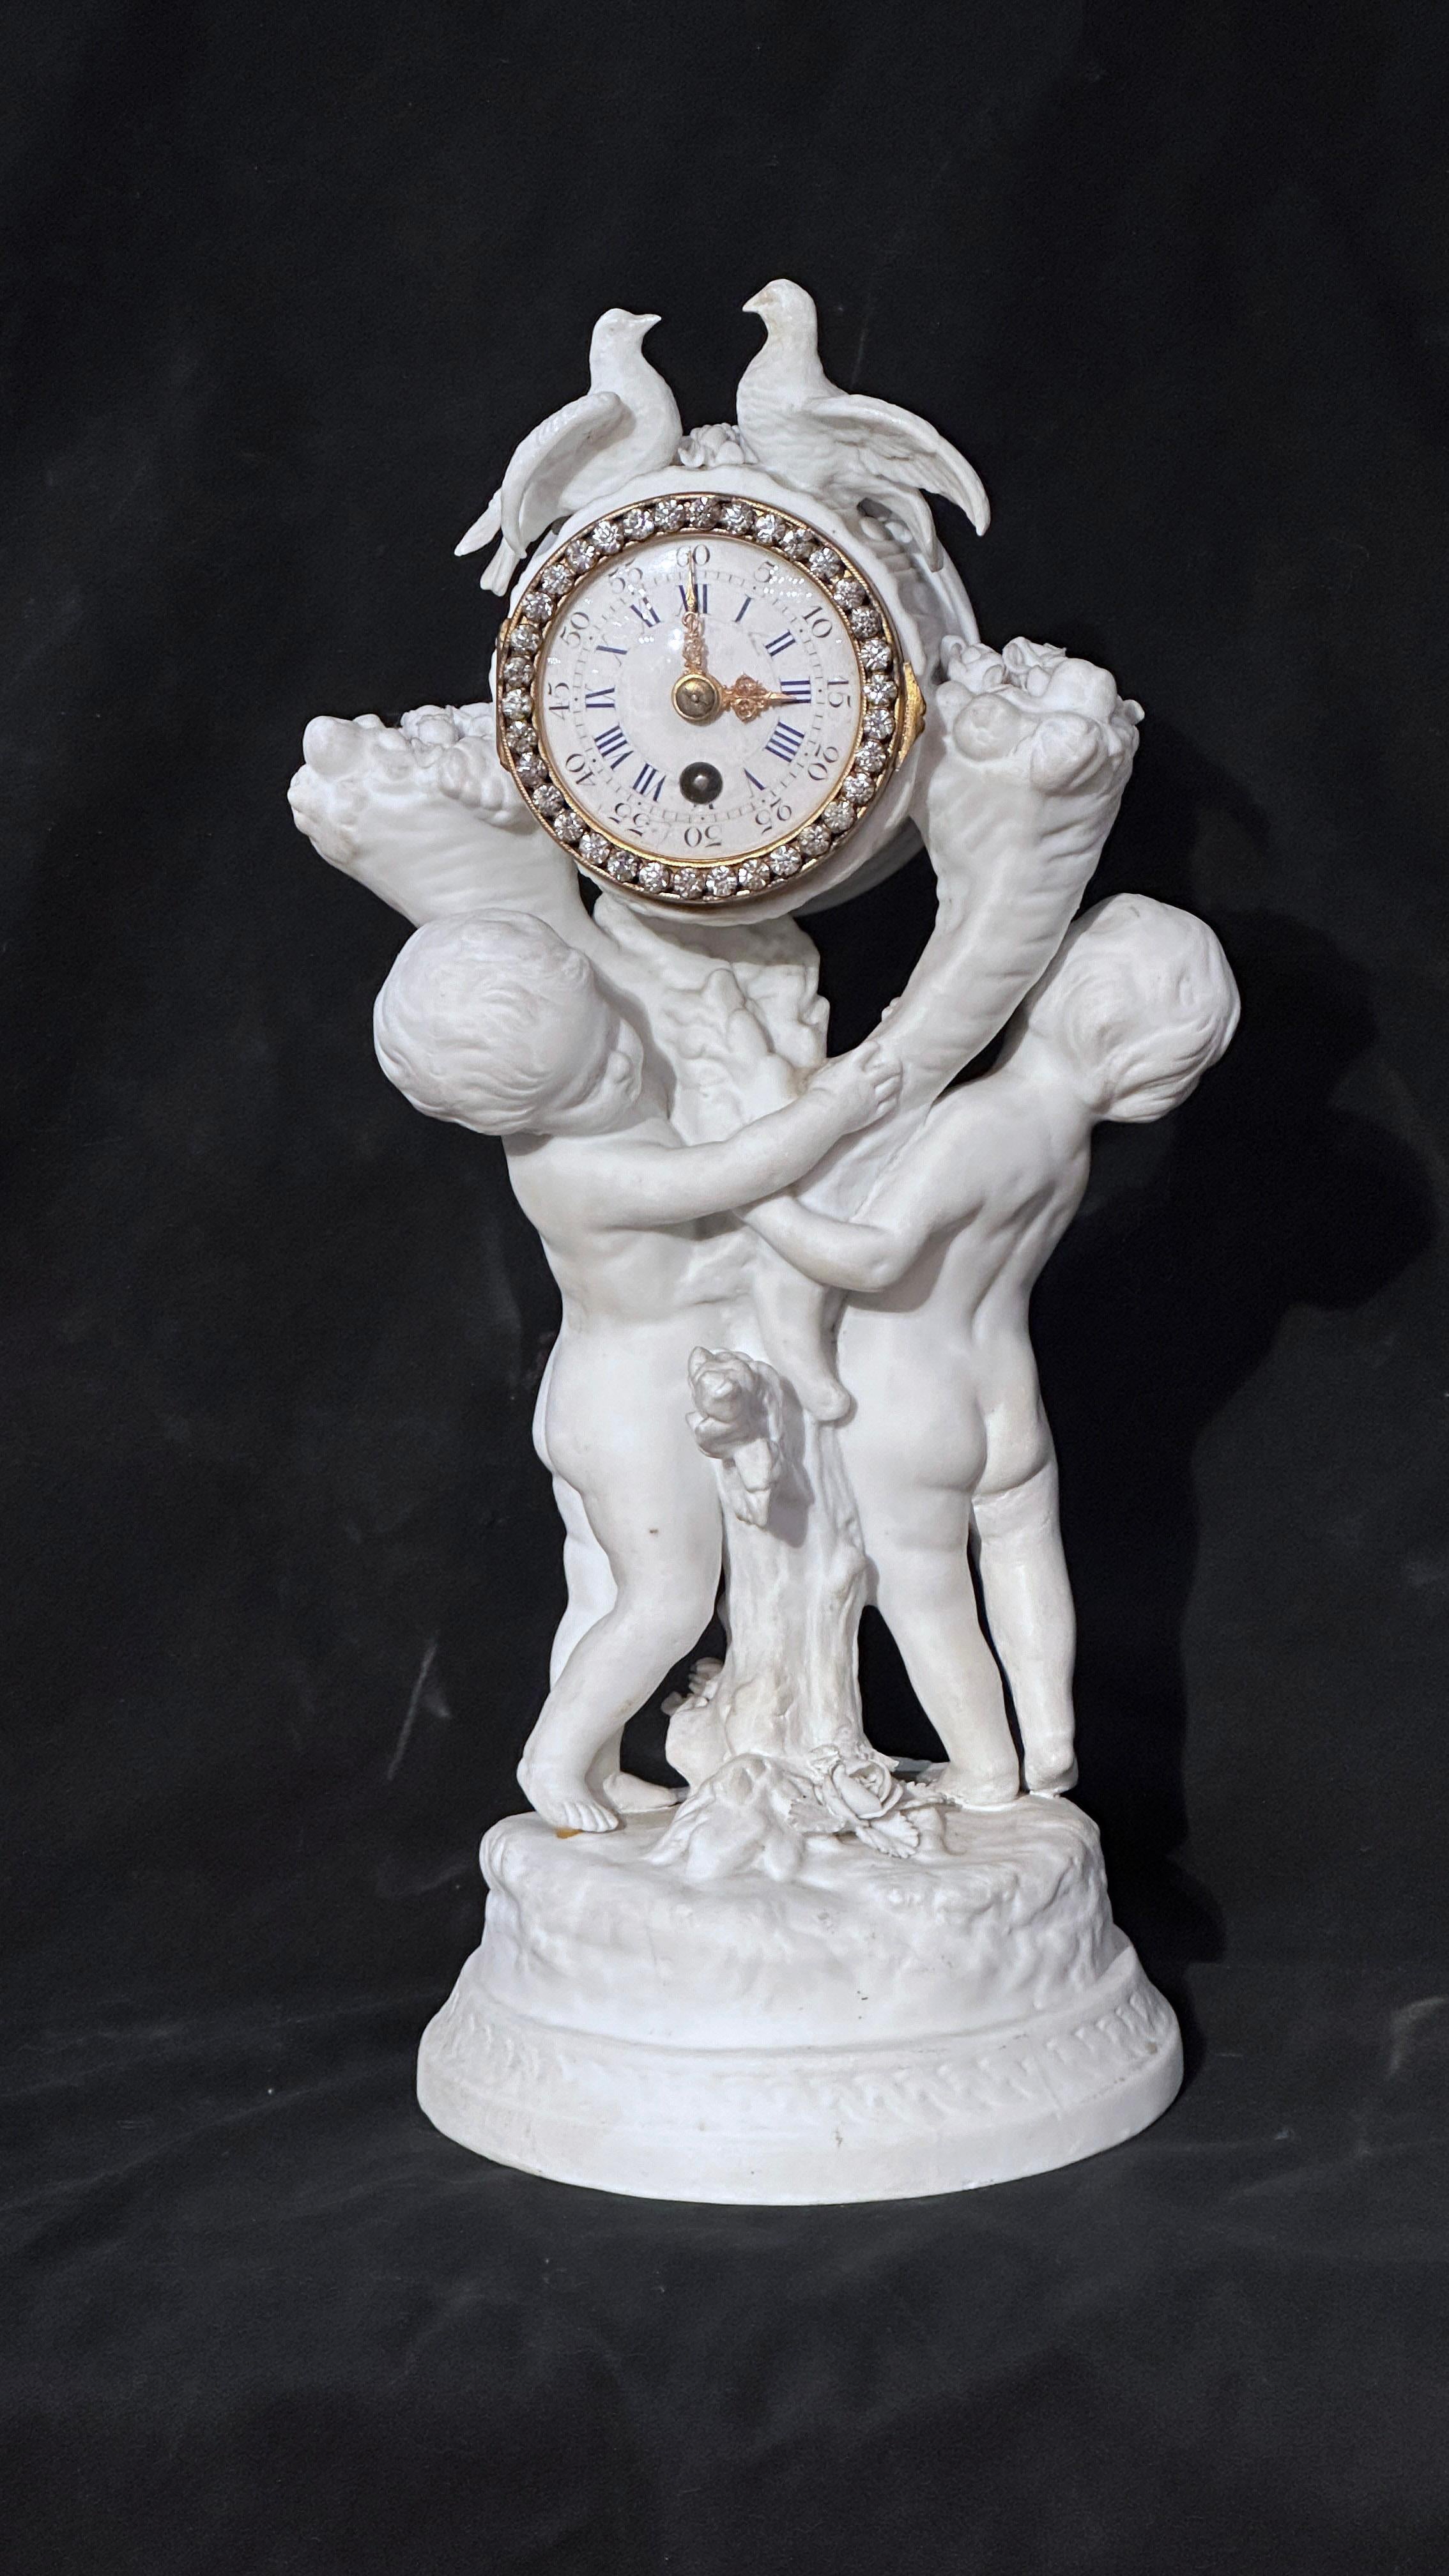 Elegante Biskuituhr mit einer Allegorie der reinen Liebe. Die federbelastete Uhr verfügt über ein emailliertes Zifferblatt mit doppelten arabischen und römischen Ziffern und eine Krone, die mit Zirkonen in Form von Diamanten besetzt ist. Das